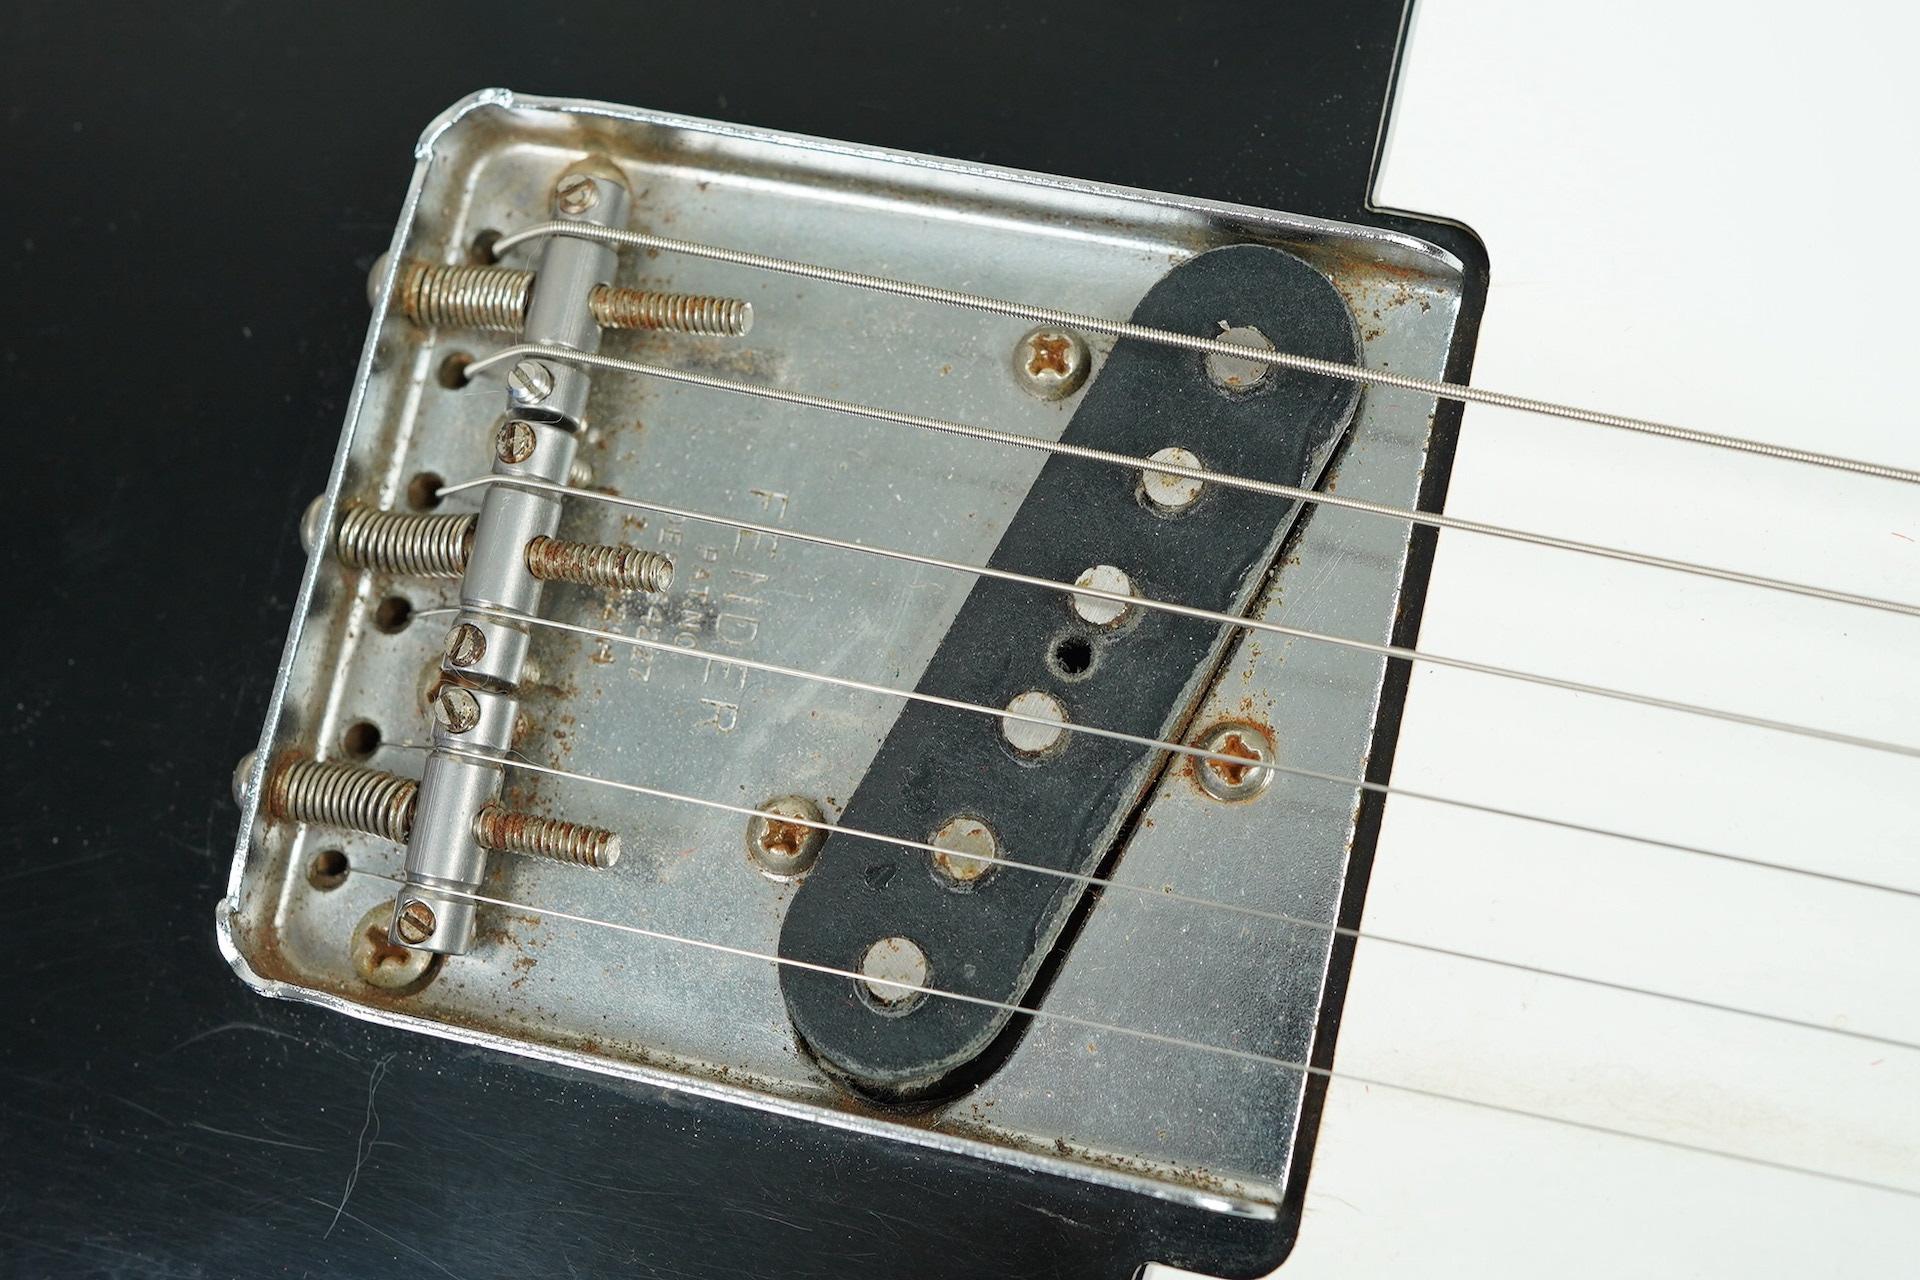 1971 Fender Telecaster Black